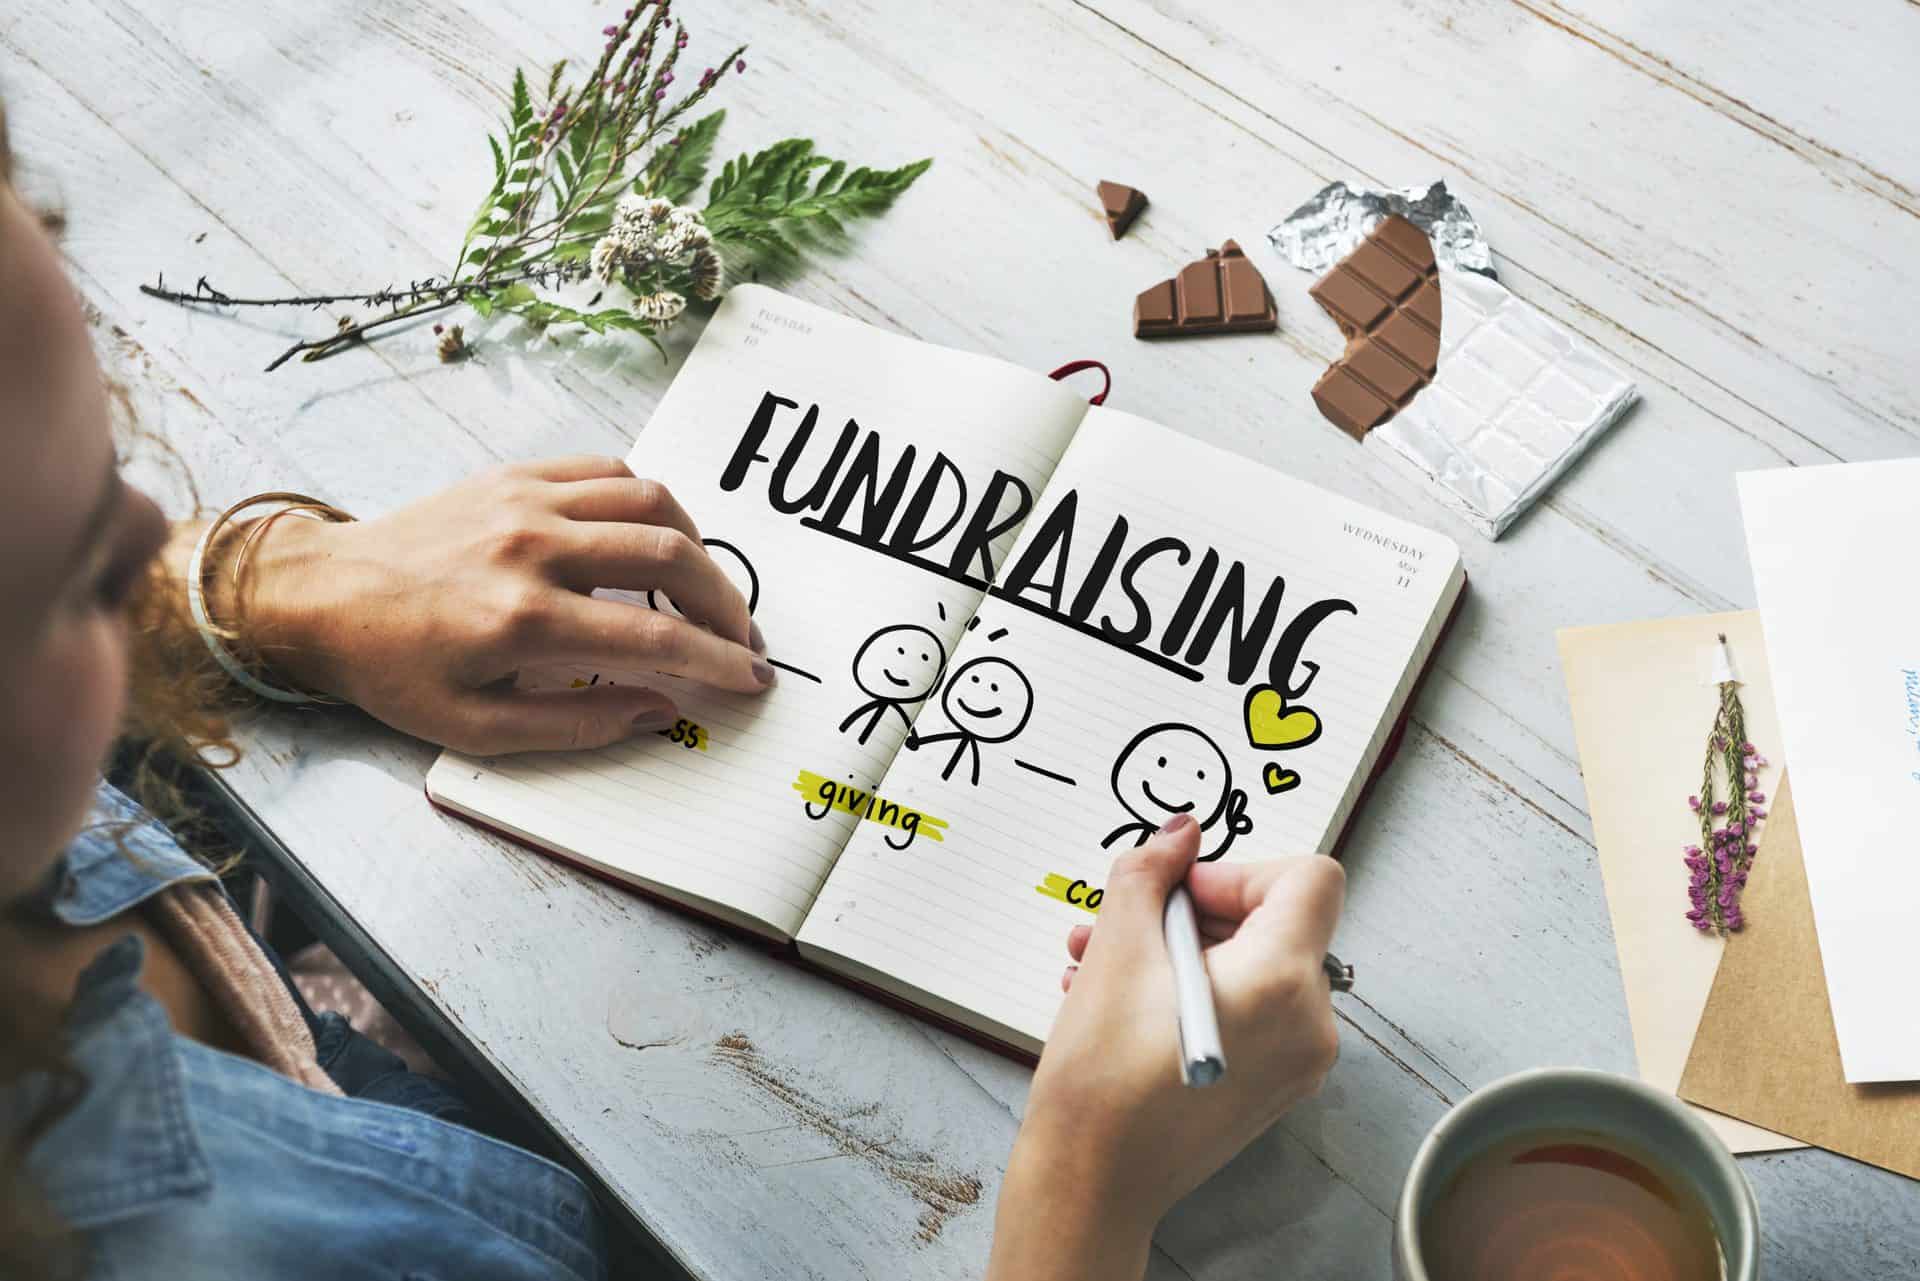 nonprofit fundraising strategies